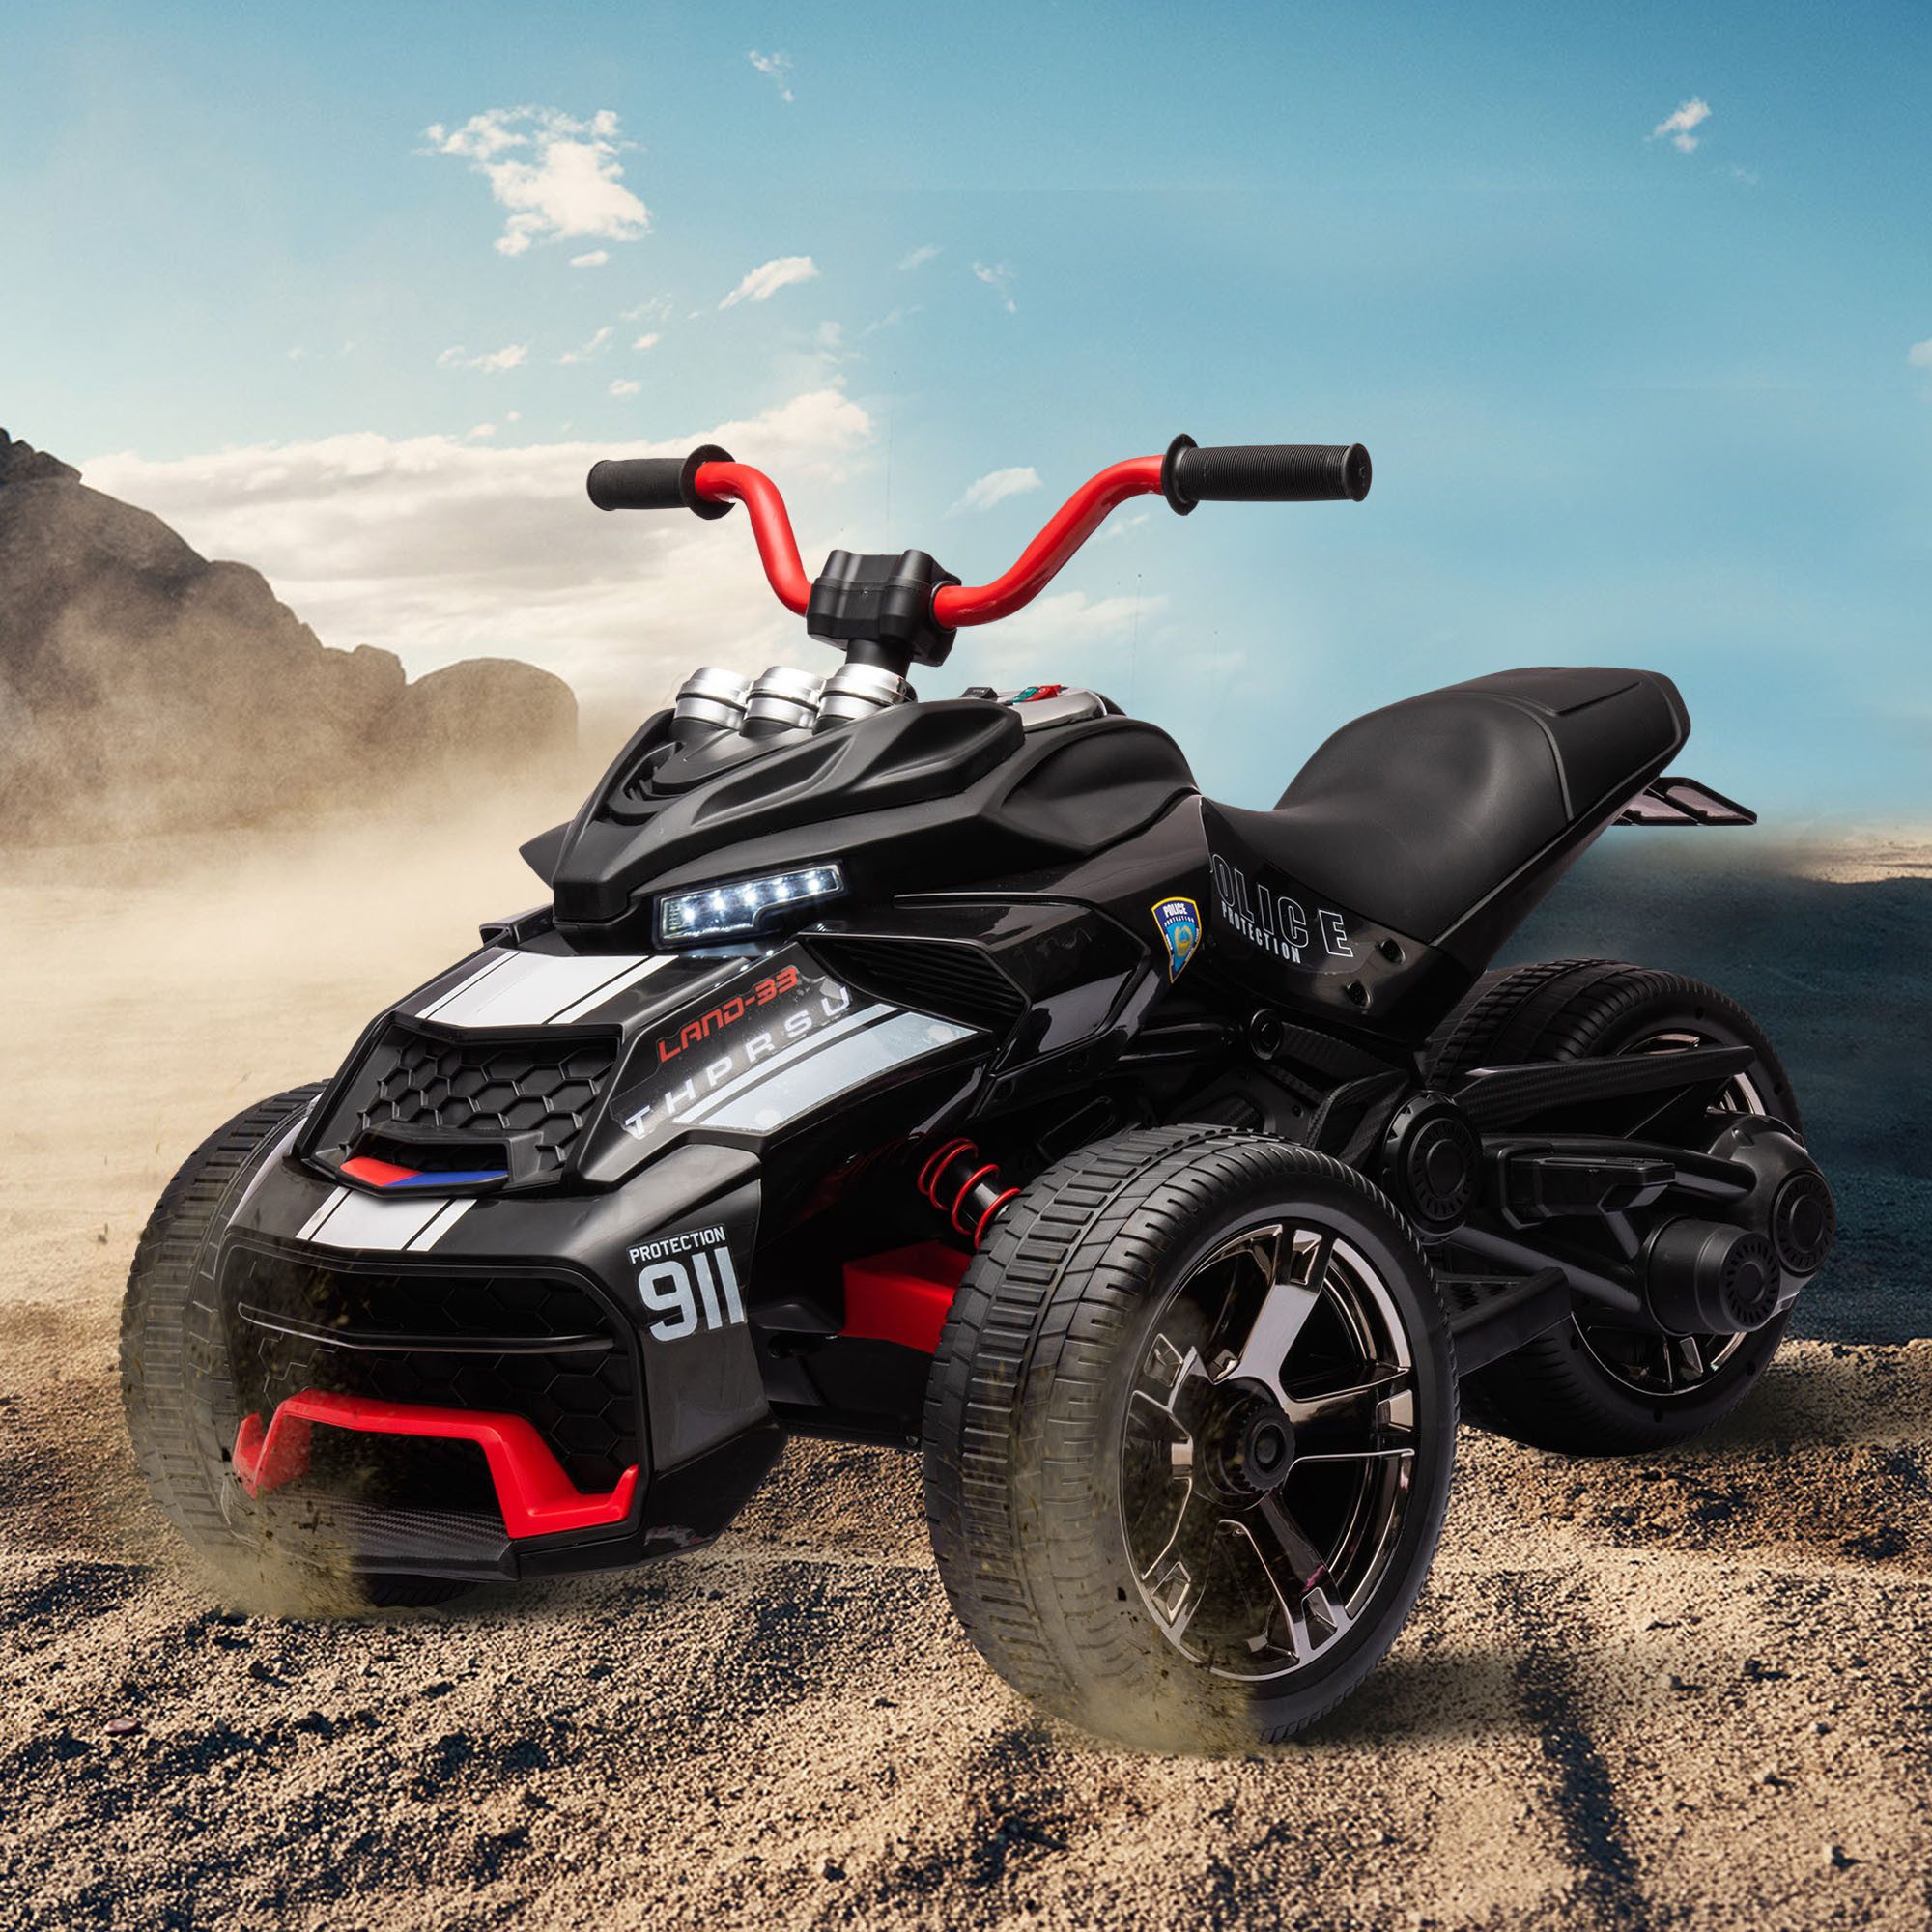 Merax Elektro-Kindermotorrad ATV mit 3 Rädern und Musik, Belastbarkeit 30 kg, Elektromotorrad mit Bluetooth, Kinderdreirad mit 2 Motoren